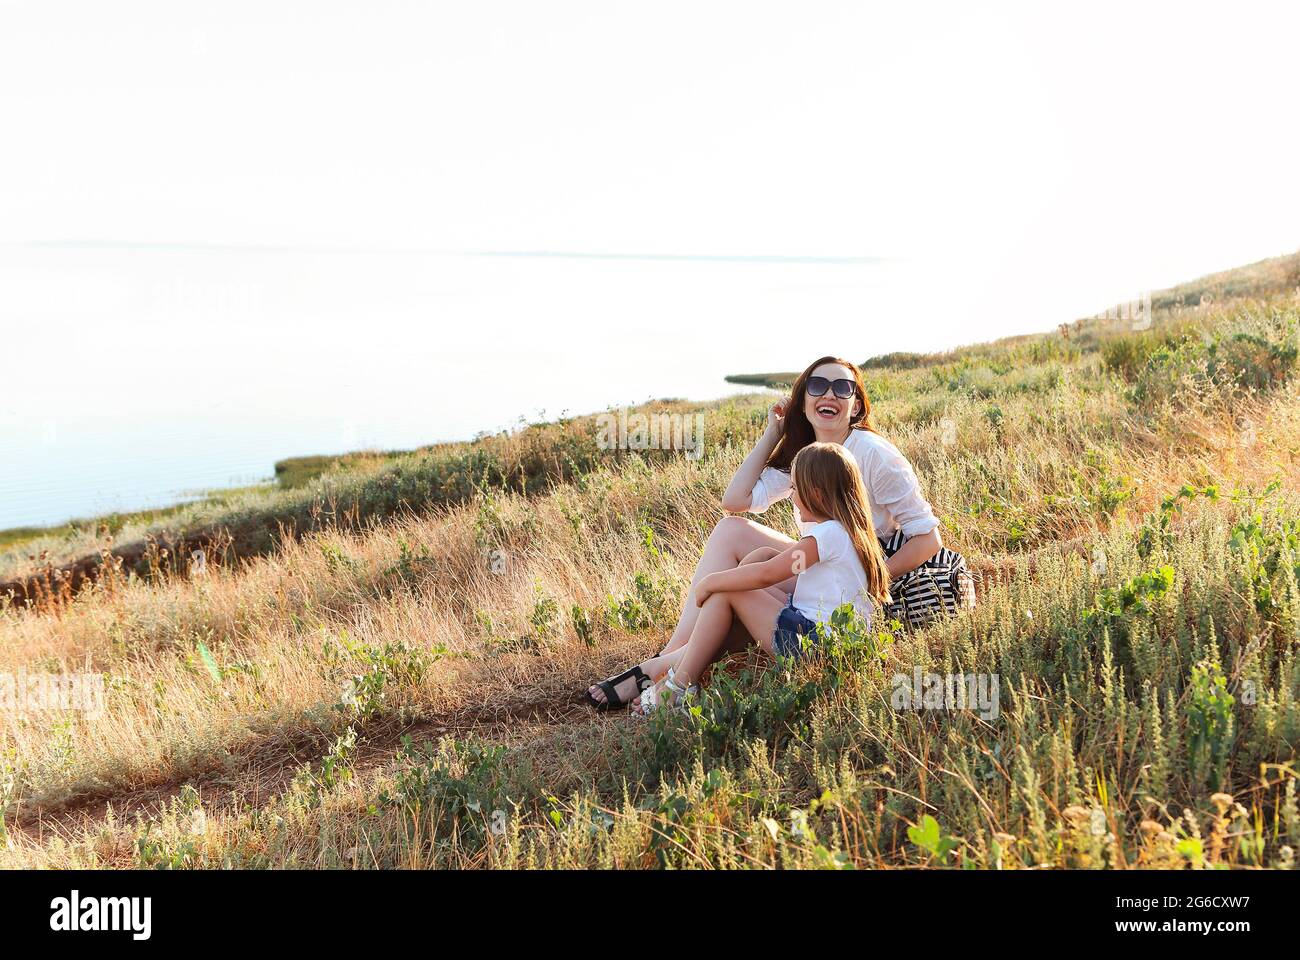 Sorridi madre e figlia coccolandosi dolcemente nel prato fiorente mentre trascorrete un fine settimana insieme in campagna e guardate la macchina fotografica Foto Stock